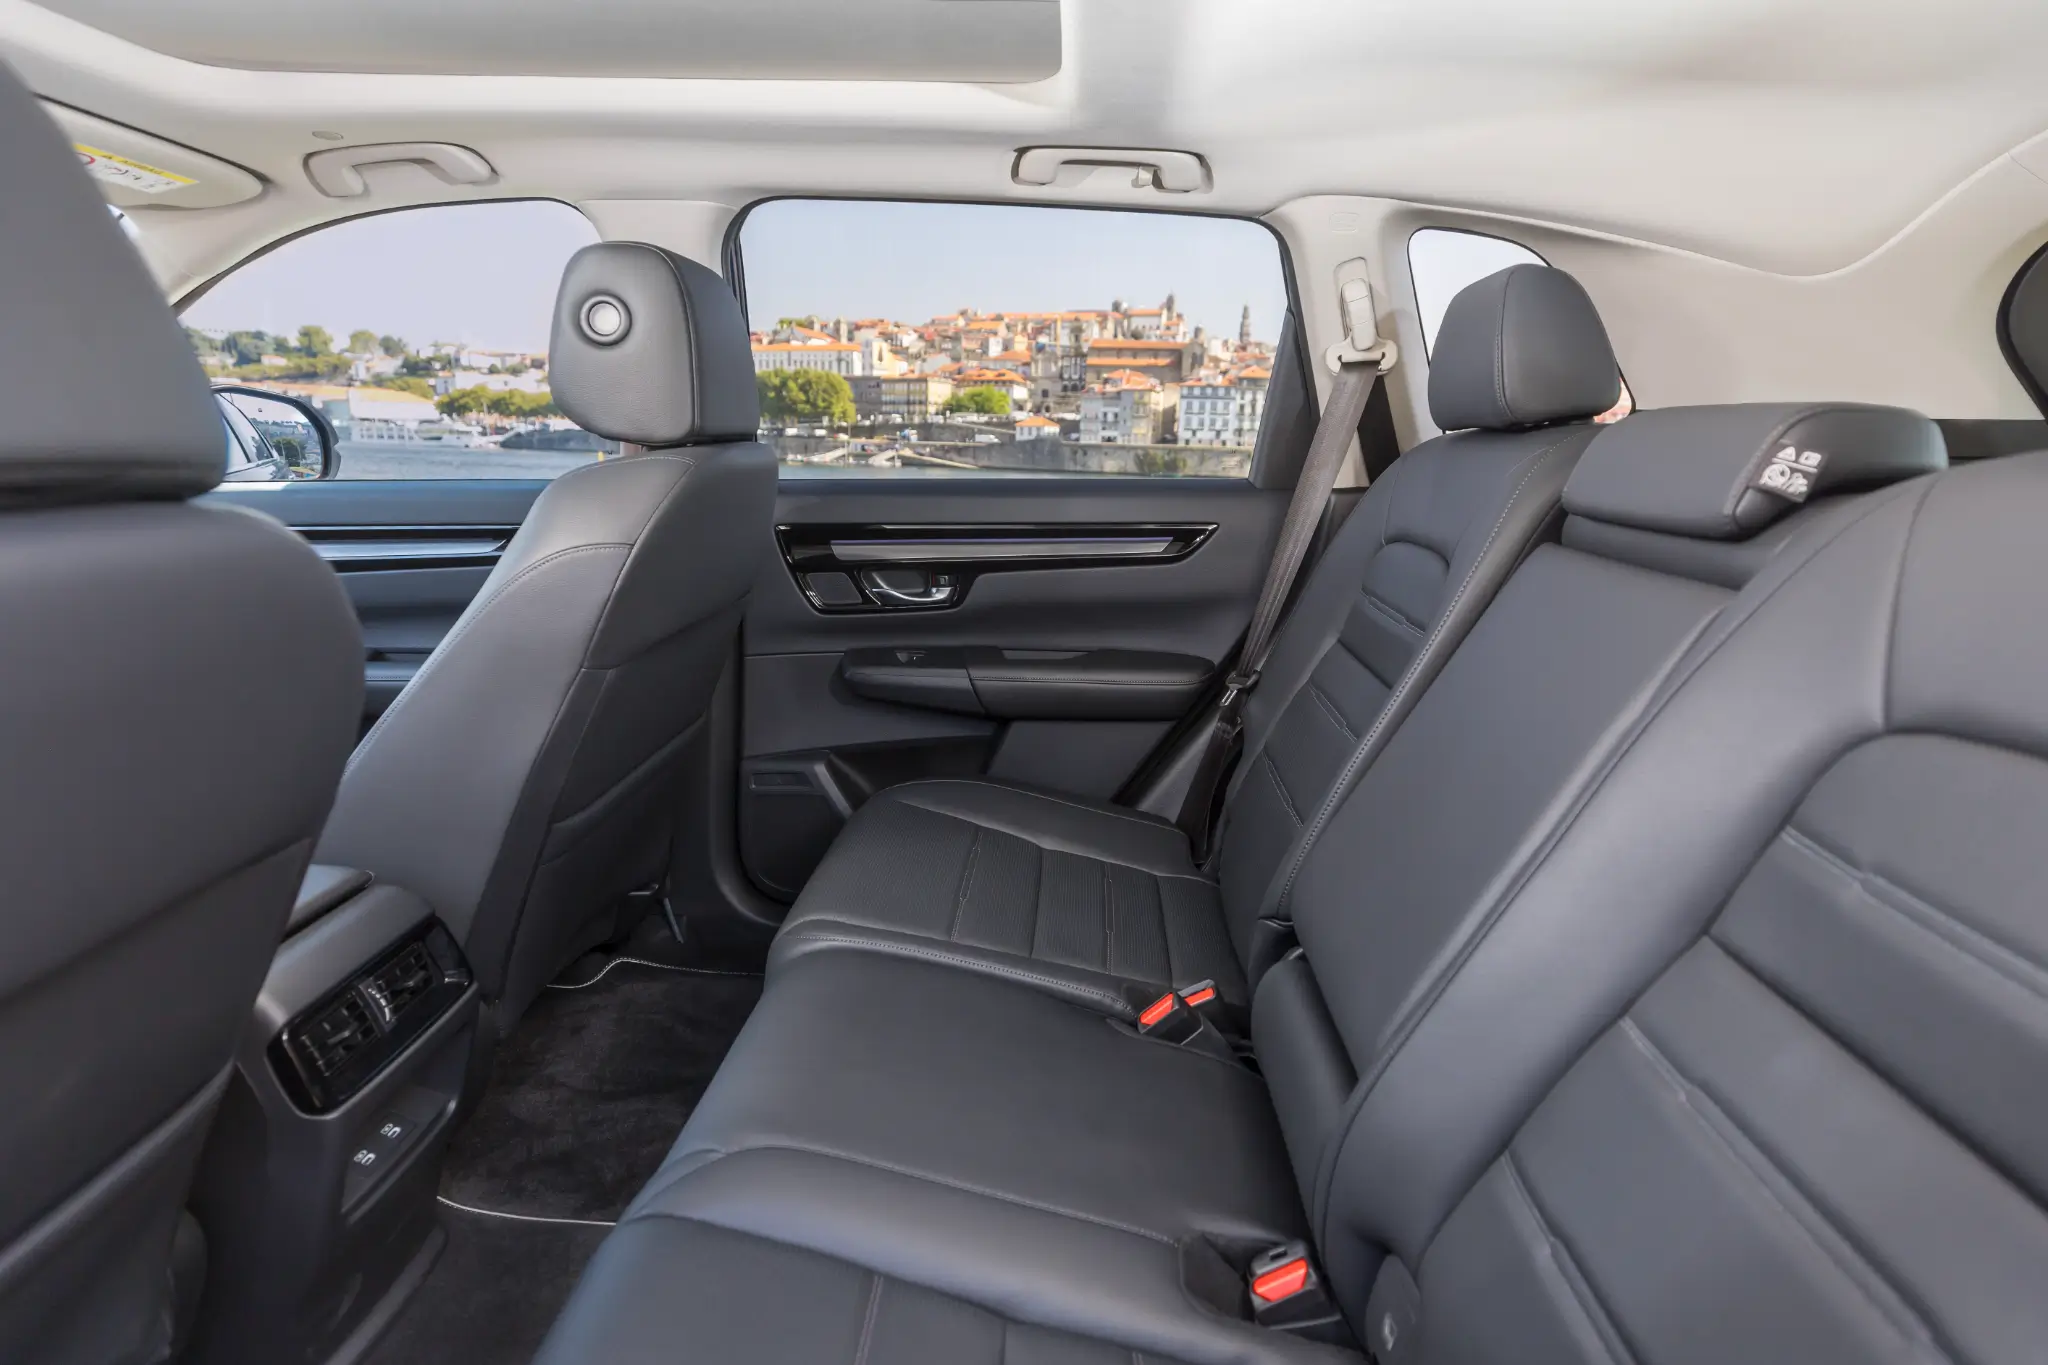 Honda CR-V Hybrid interior segunda fila